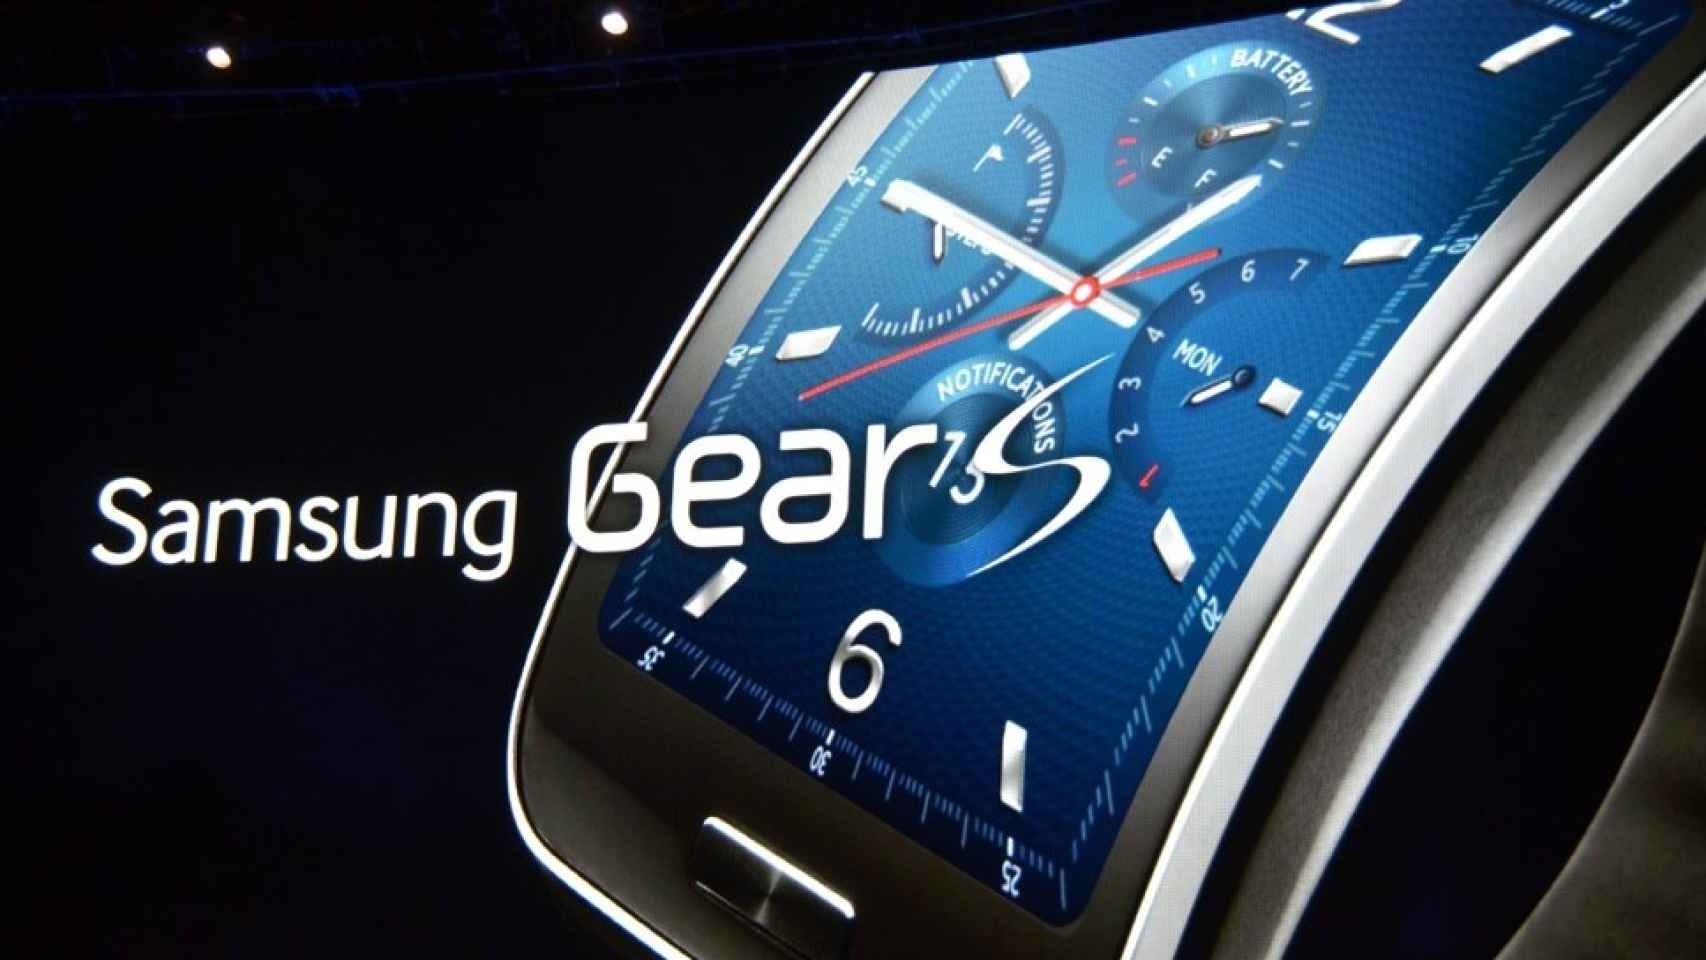 Samsung Gear S: todos los detalles, apps, SDK, accesorios y vídeo